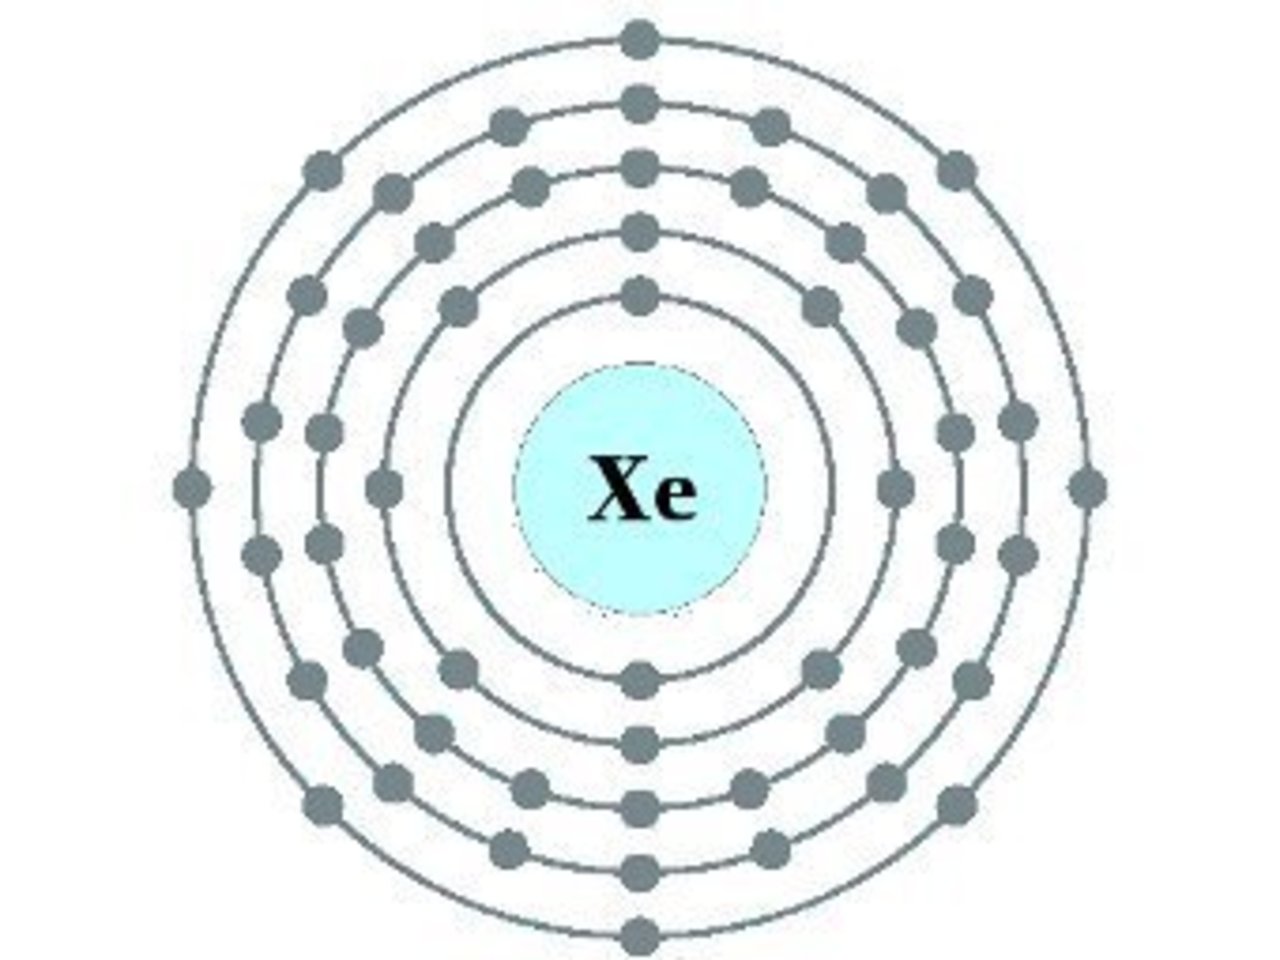 Строение атома калия (k), схема и примеры